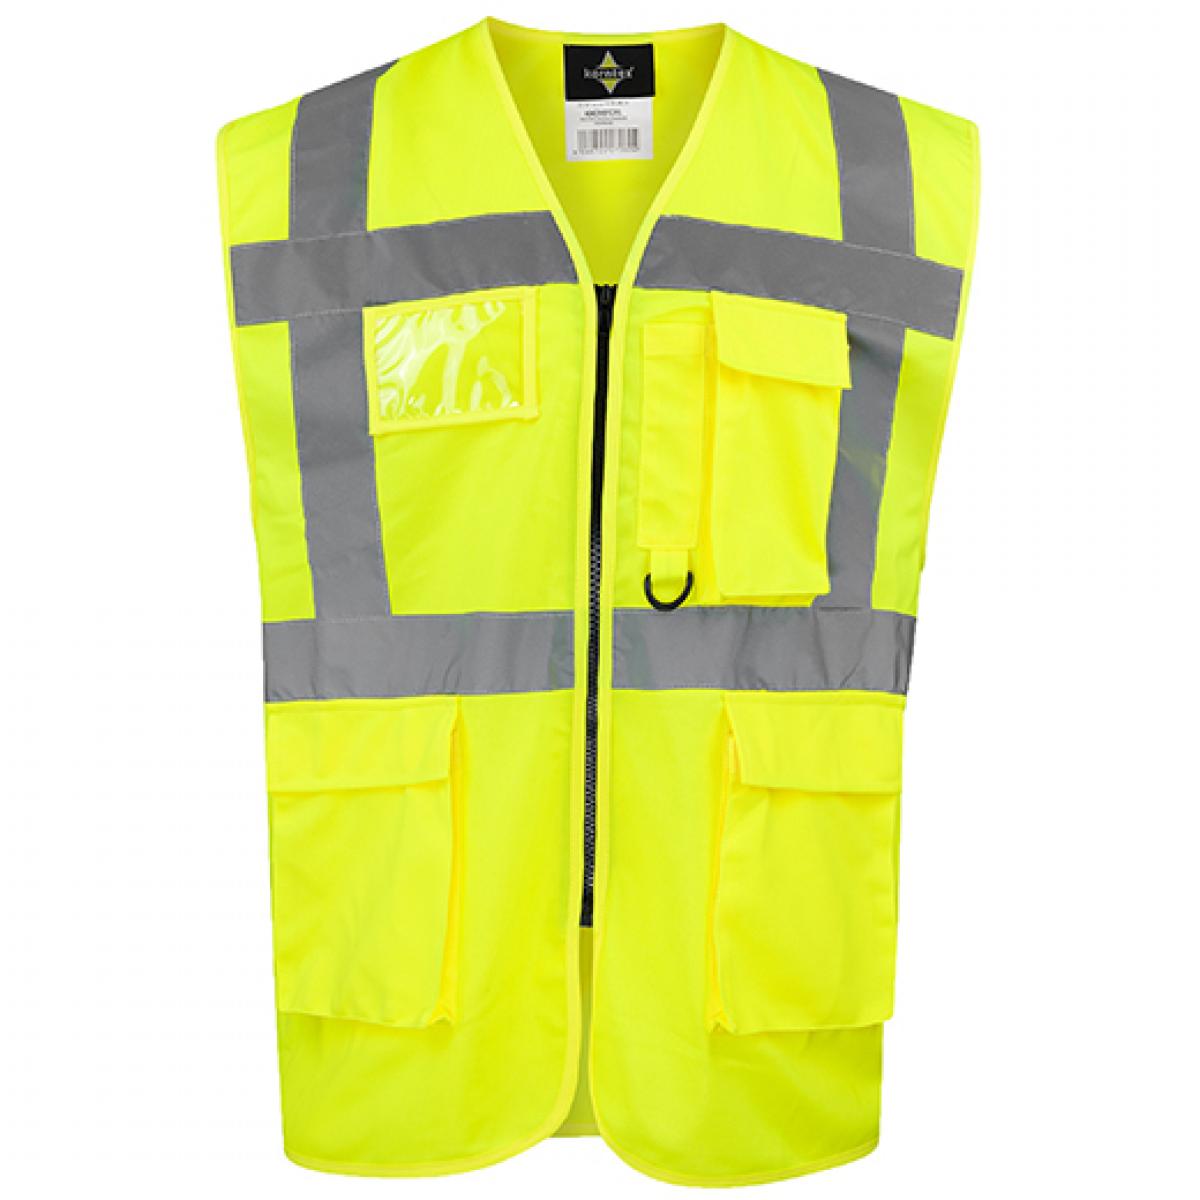 Hersteller: Korntex Herstellernummer: KXCMF Artikelbezeichnung: Comfort Executive Multifunctional Safety Vest Hamburg Farbe: Signal Yellow